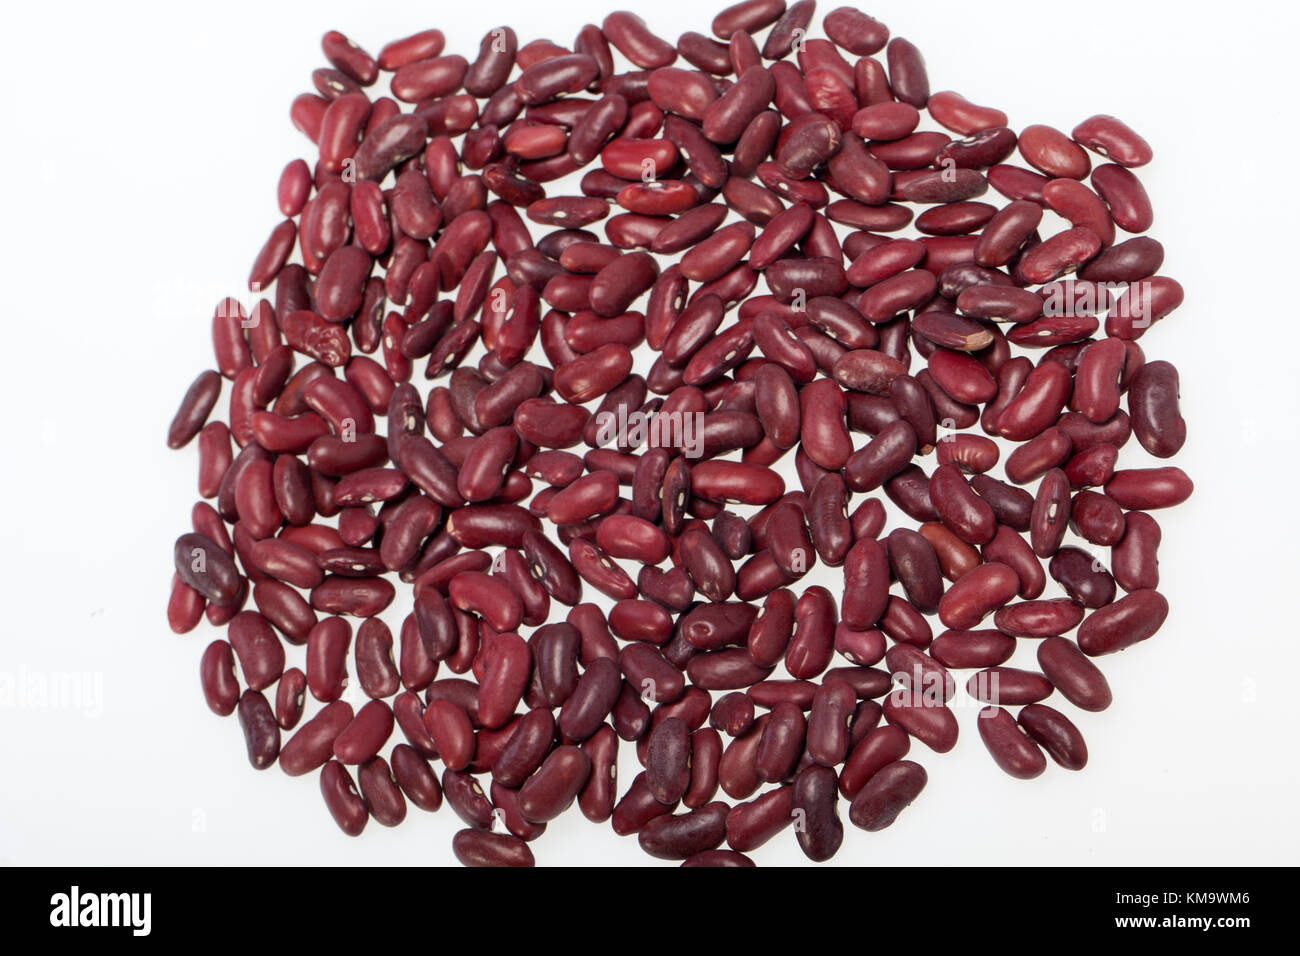 azuki beans on white background Stock Photo